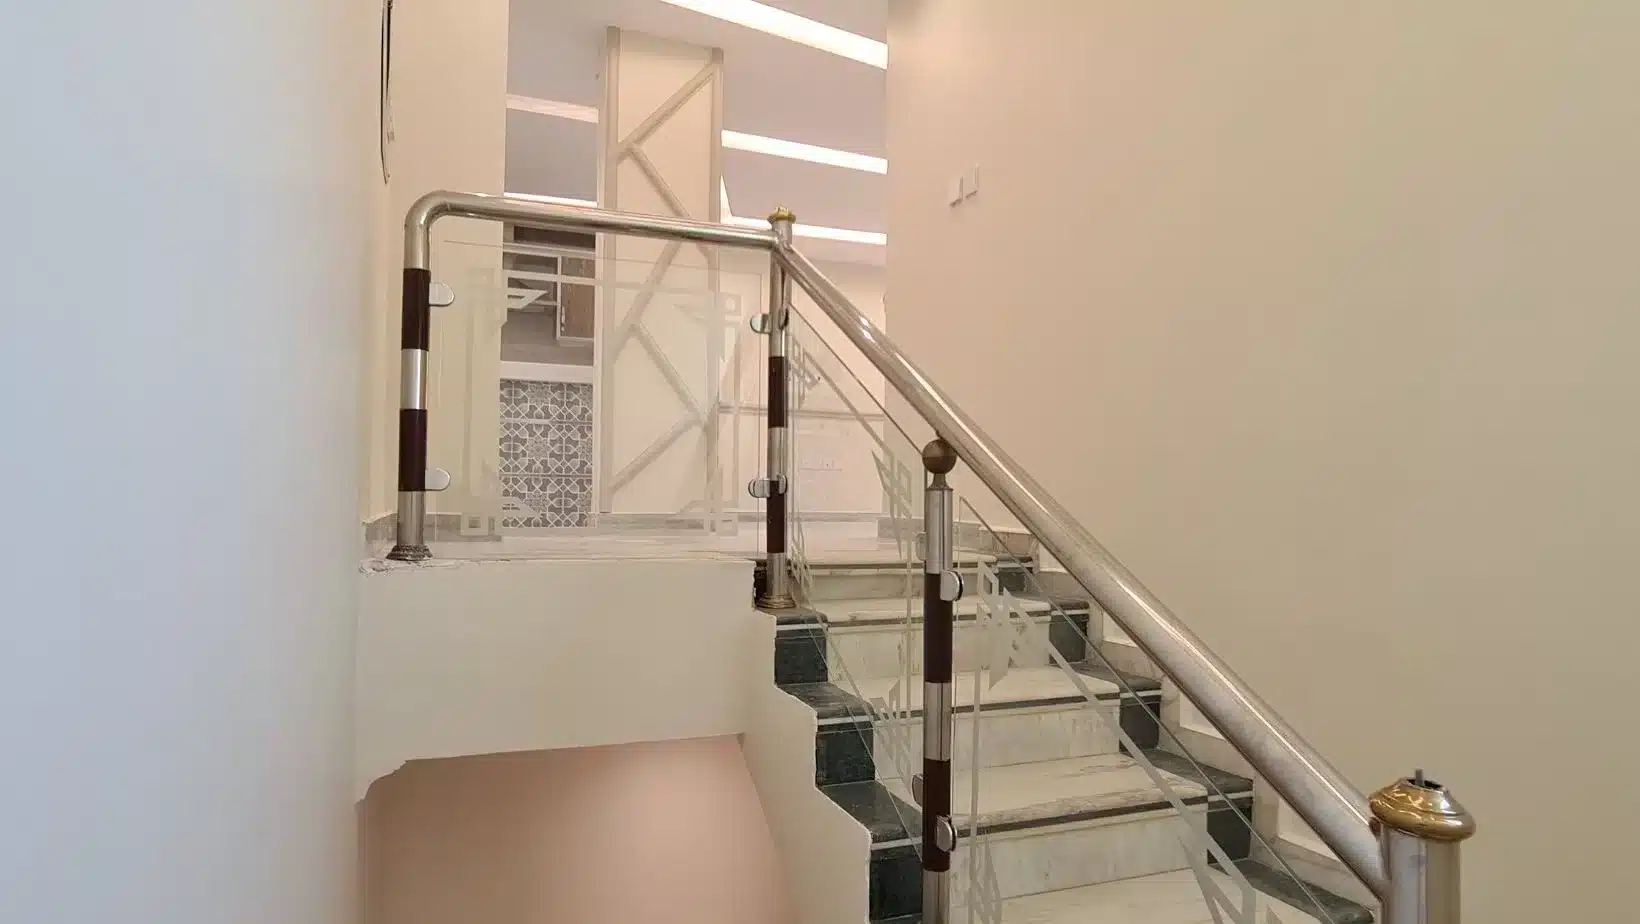 فلل النموذجية للإيجار الرياض. Namozagia villas for rent in Riyadh.